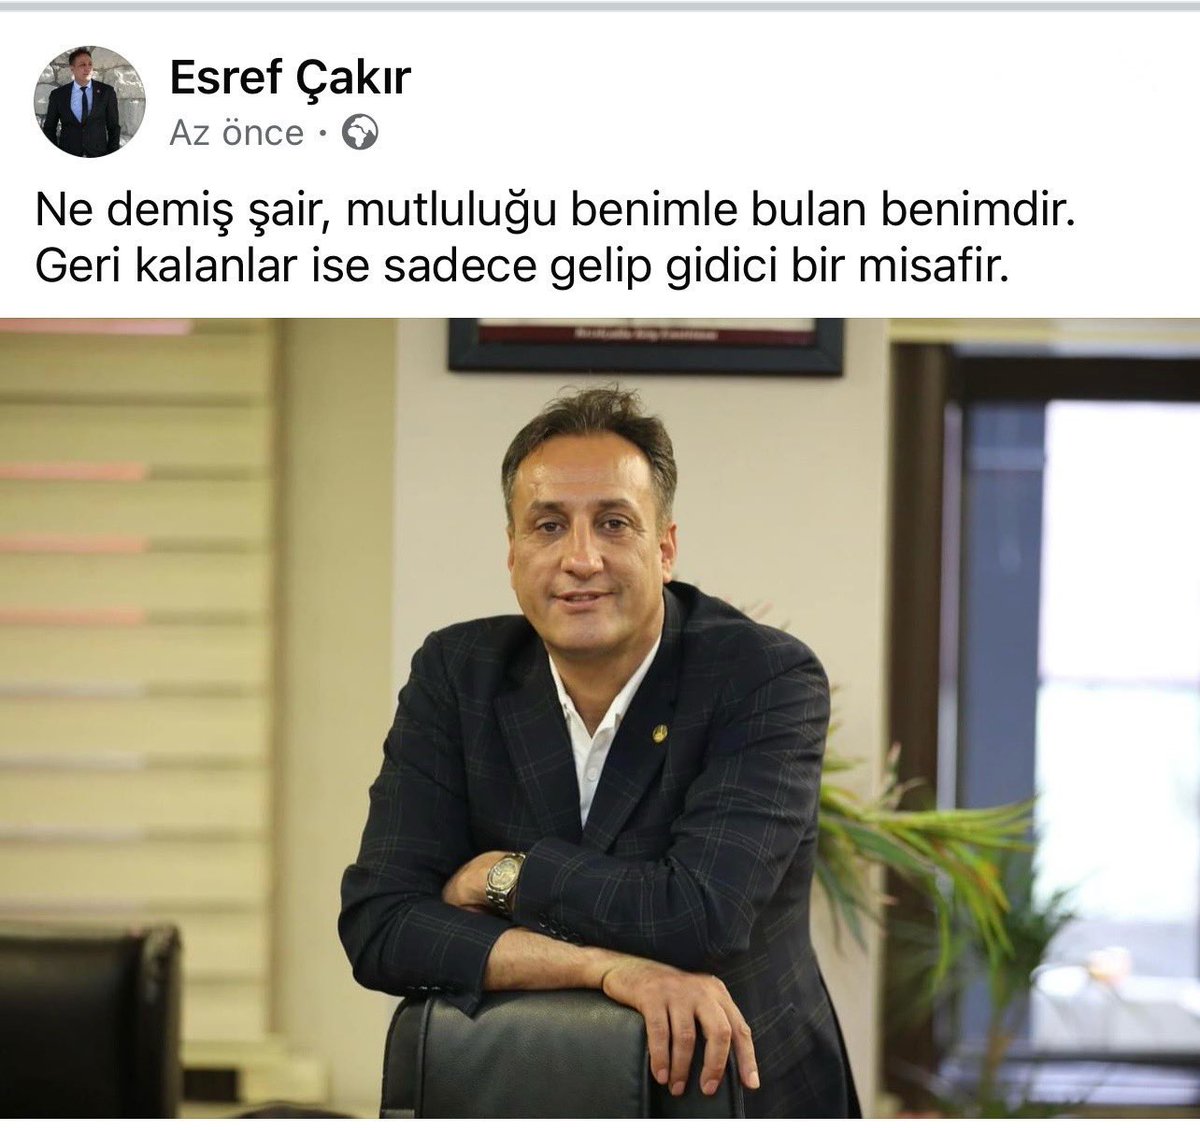 ‼️ İzmir Büyükşehir belediye meclis üyesi ve Buca belediye başkan yardımcısı eşref çakır imana gelmiş‼️ @Esref__cakir @herkesicinCHP @eczozgurozel @gorkemdumanbuca @cagdaskayachp